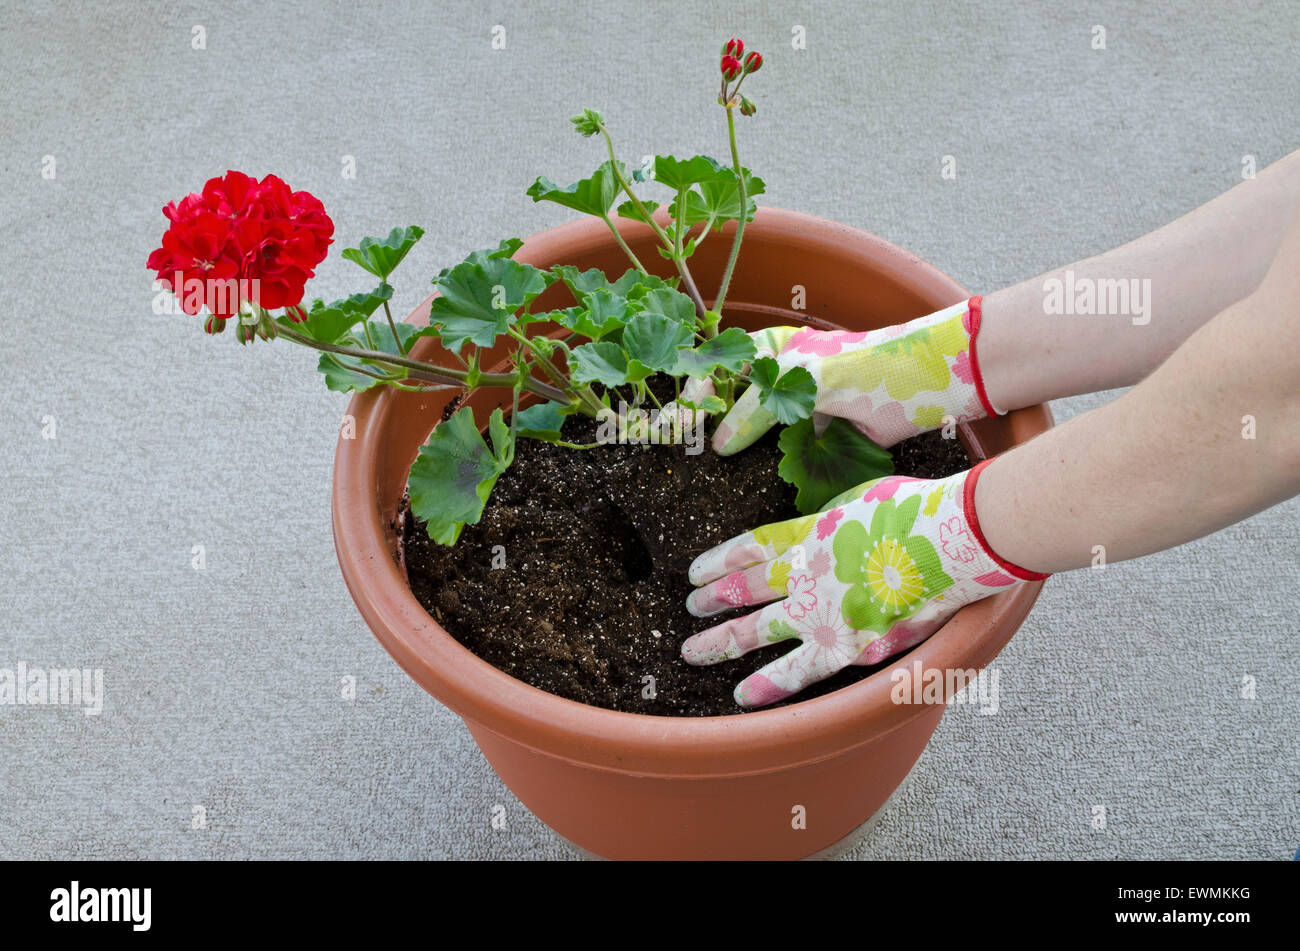 Container Gardening, Vergießen einer Anlage - Schritt 5 von 7: Pflanzen Blumen (Geranien) in der Blumenerde und die Wurzeln. Model Released. Stockfoto